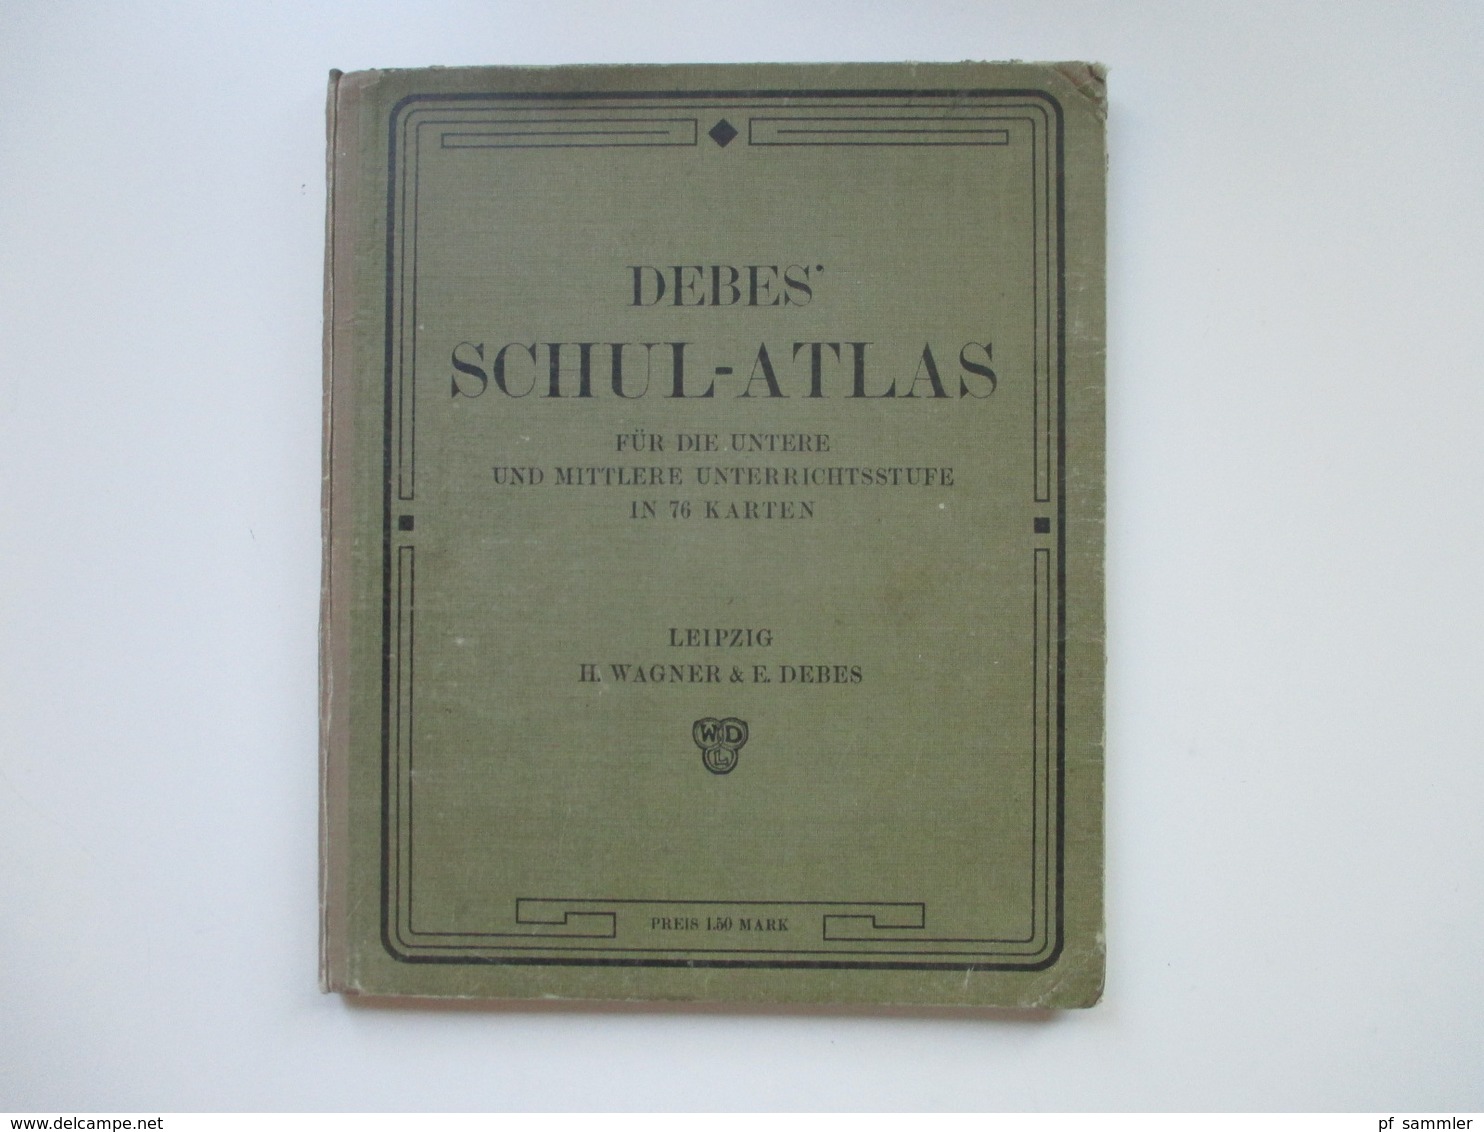 Debes Schulatlas Mit 76 Karten Leipzig H. Wagner & E. Debes. Jahr 1914 - Maps Of The World